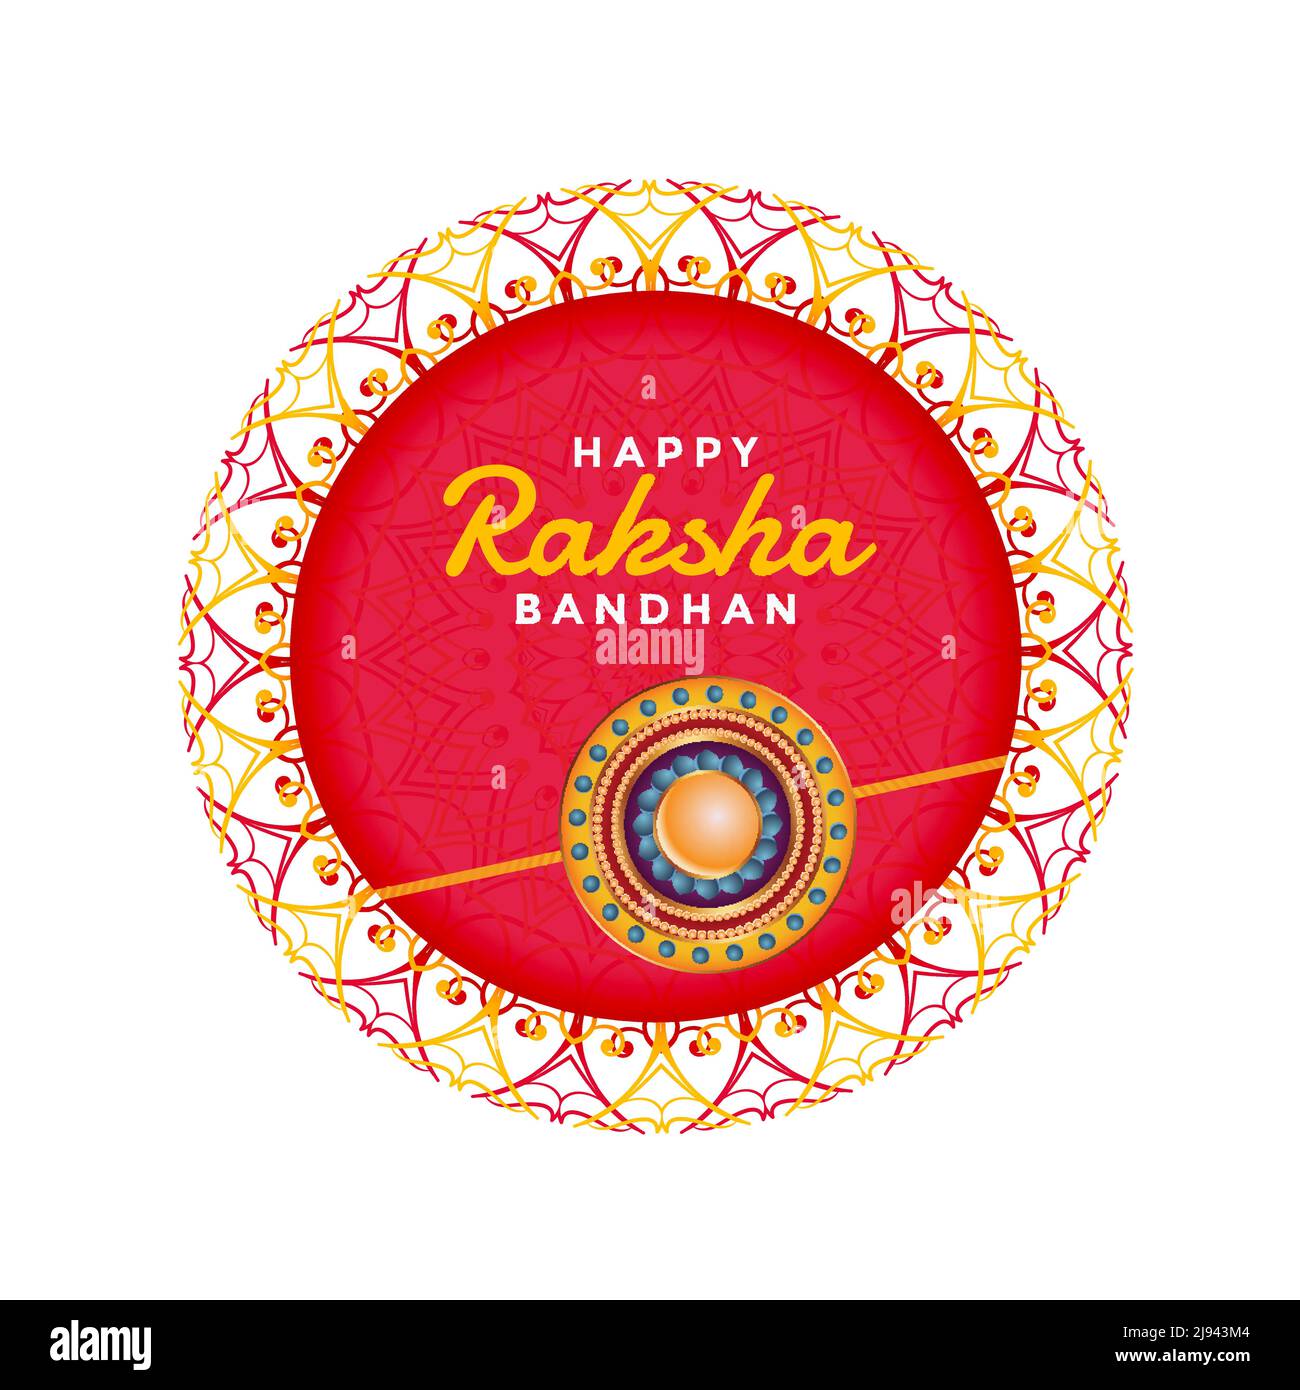 rakhi festival background for raksha bandhan Stock Vector Image & Art -  Alamy